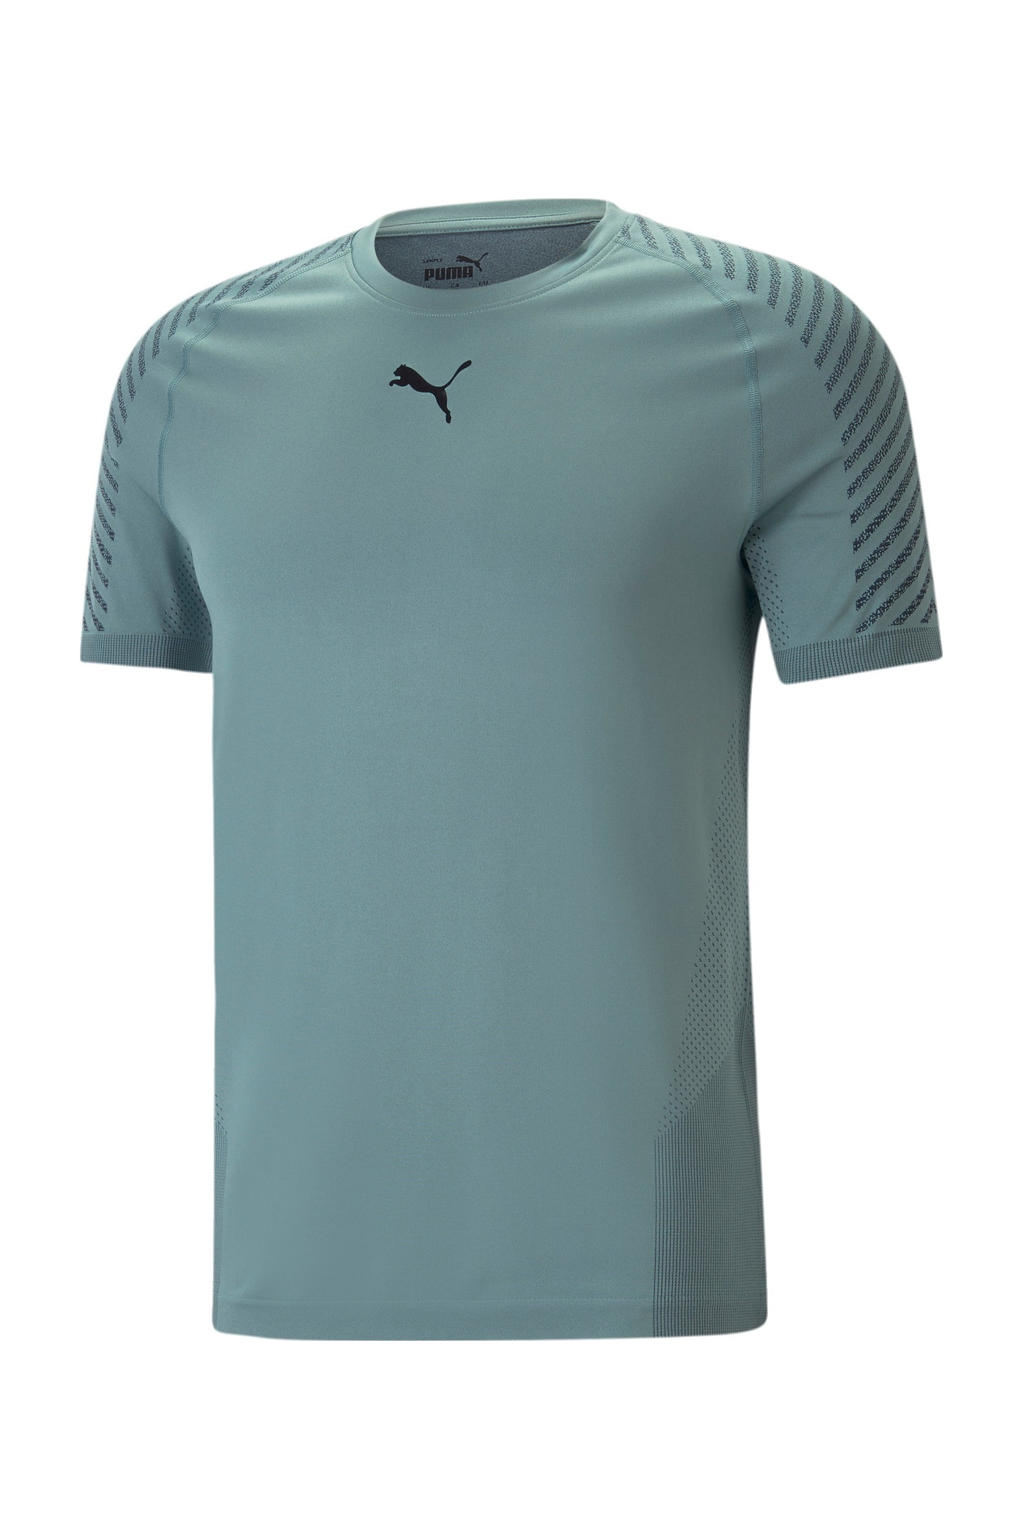 Turquoise heren Puma sport T-shirt van polyester met logo dessin, korte mouwen en ronde hals